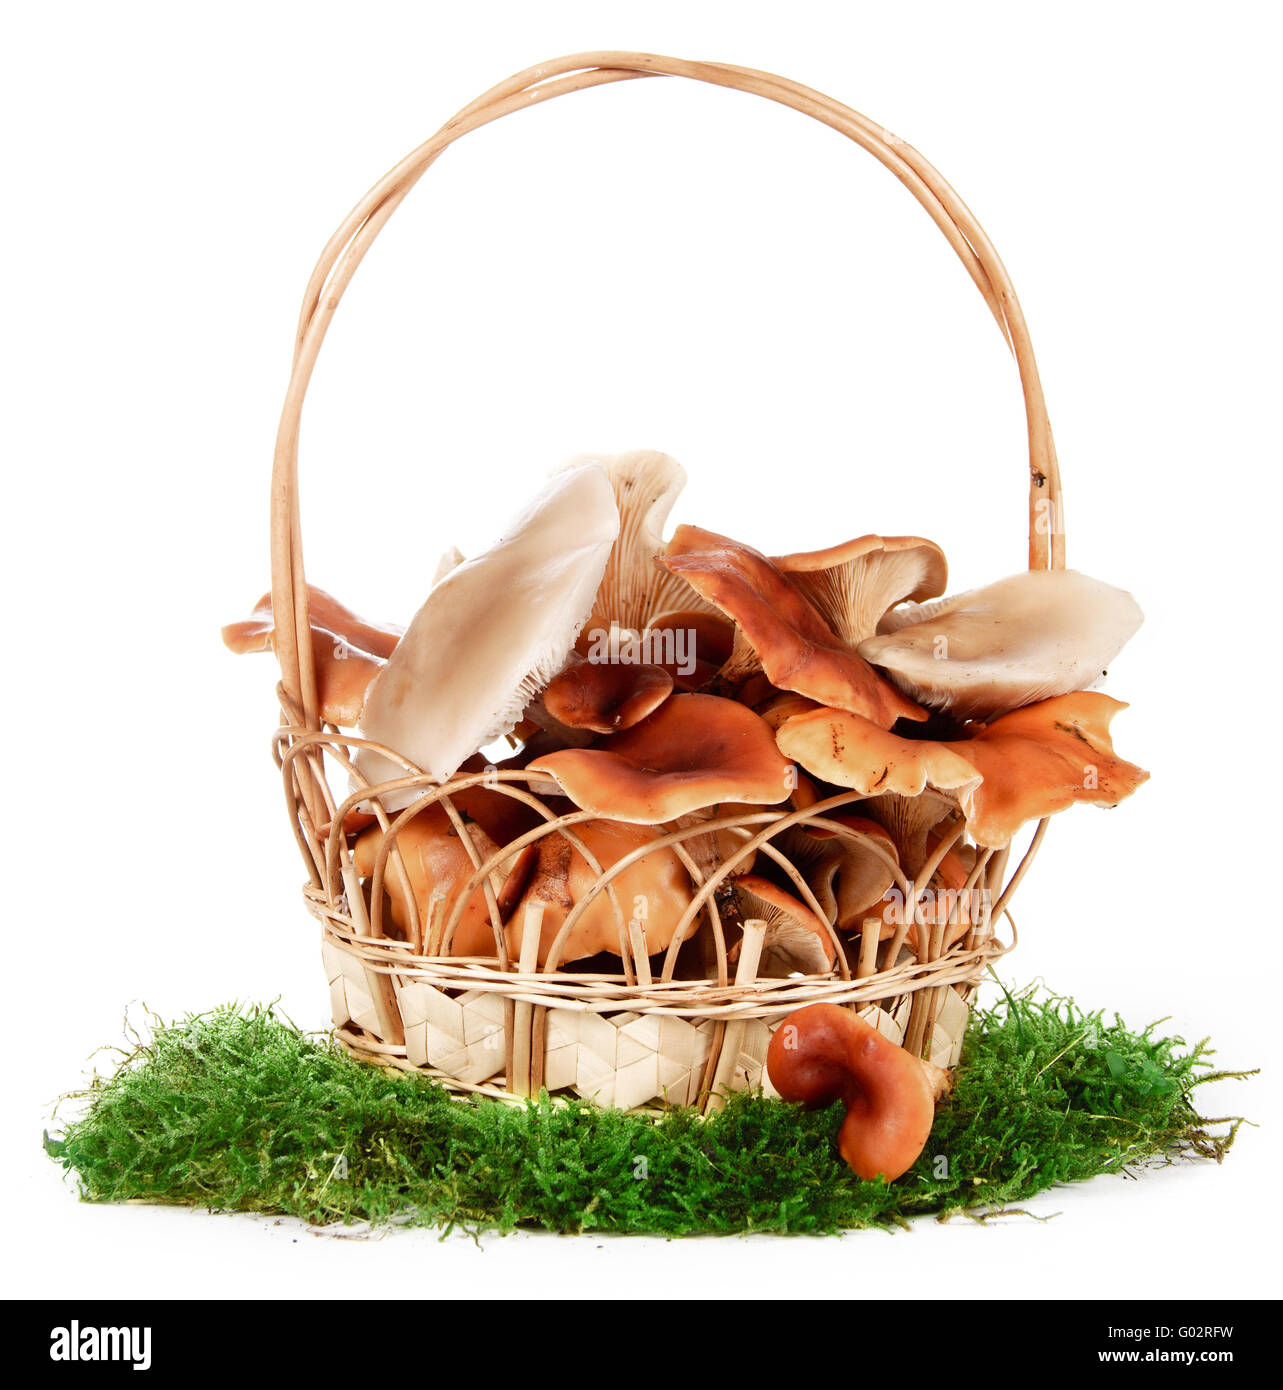 L'immagine di un cestello con i funghi, isolati su sfondo bianco Foto Stock